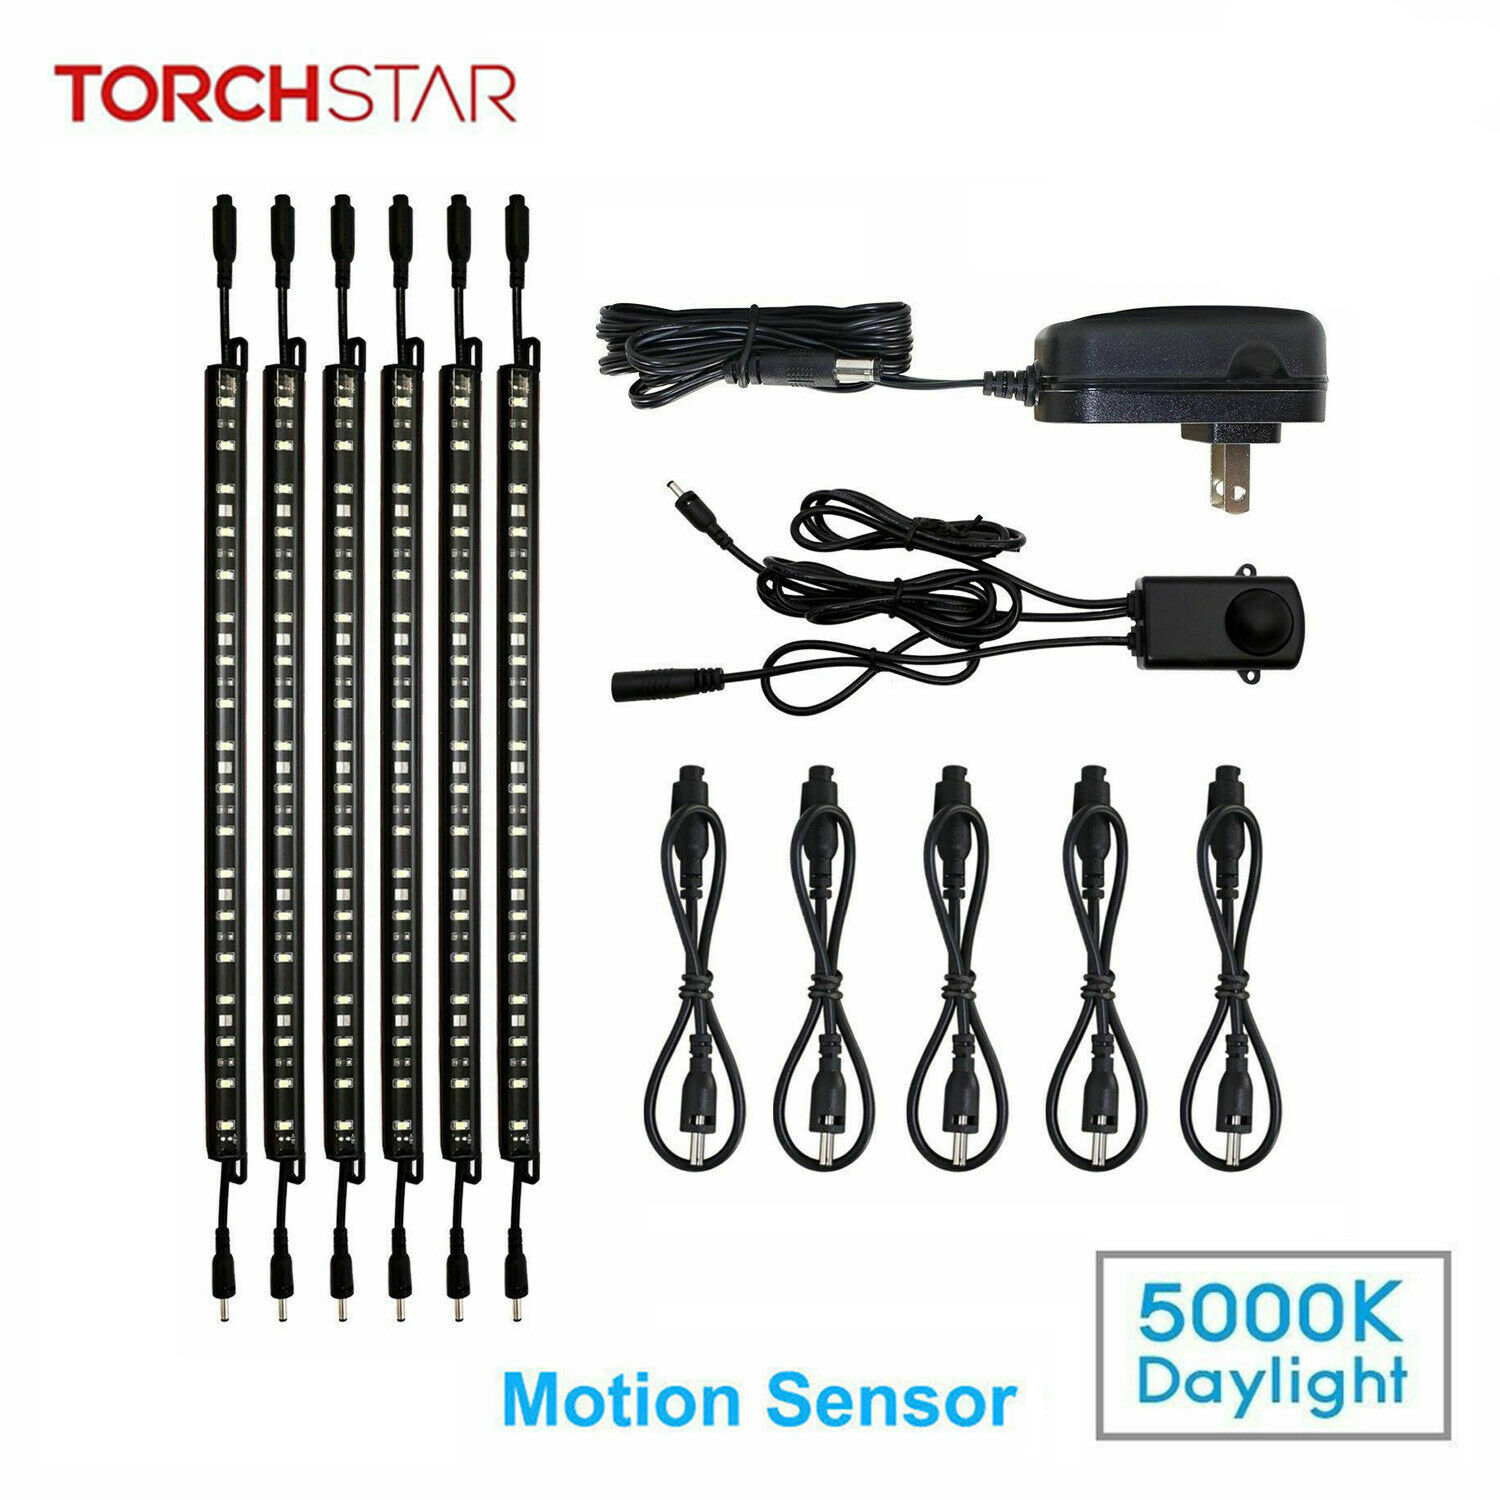 12 Inch Safe Lighting Kit, Motion Sensor, For Under Cabinet, 5000k, 6pcs